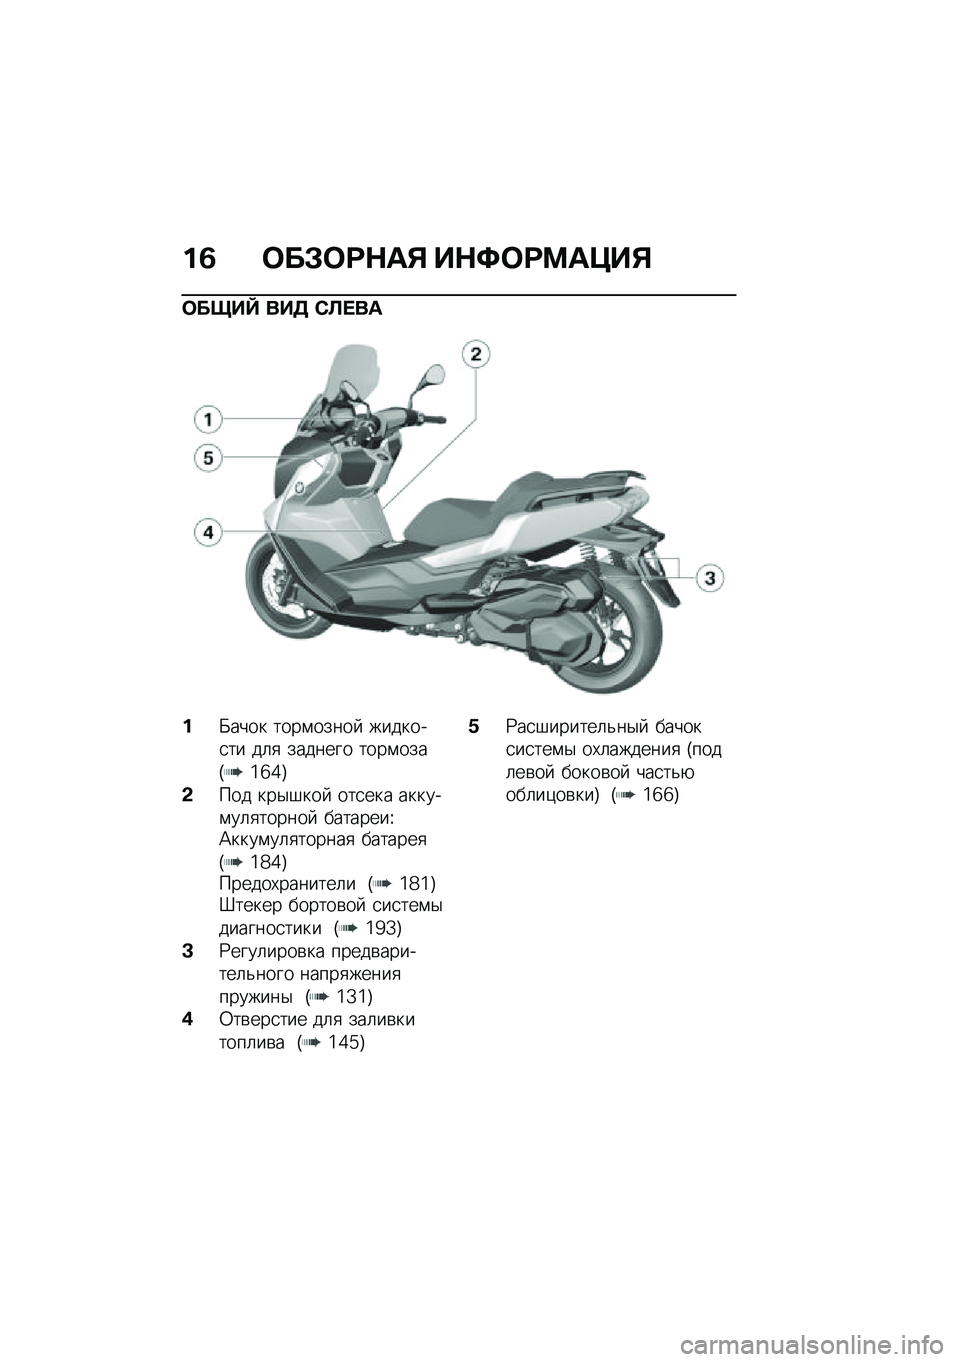 BMW MOTORRAD C 400 GT 2021  Руководство по эксплуатации (in Russian) ��3 �	��#�	�;�$��% ��$�<�	�;�=��>��%
�	����\ ���5 �*�A� ��
��X���� ����\f�����  �������
�� ��	�
 ������� ����\f����T�6�c�7�U
�&��� ���$�#���  ��